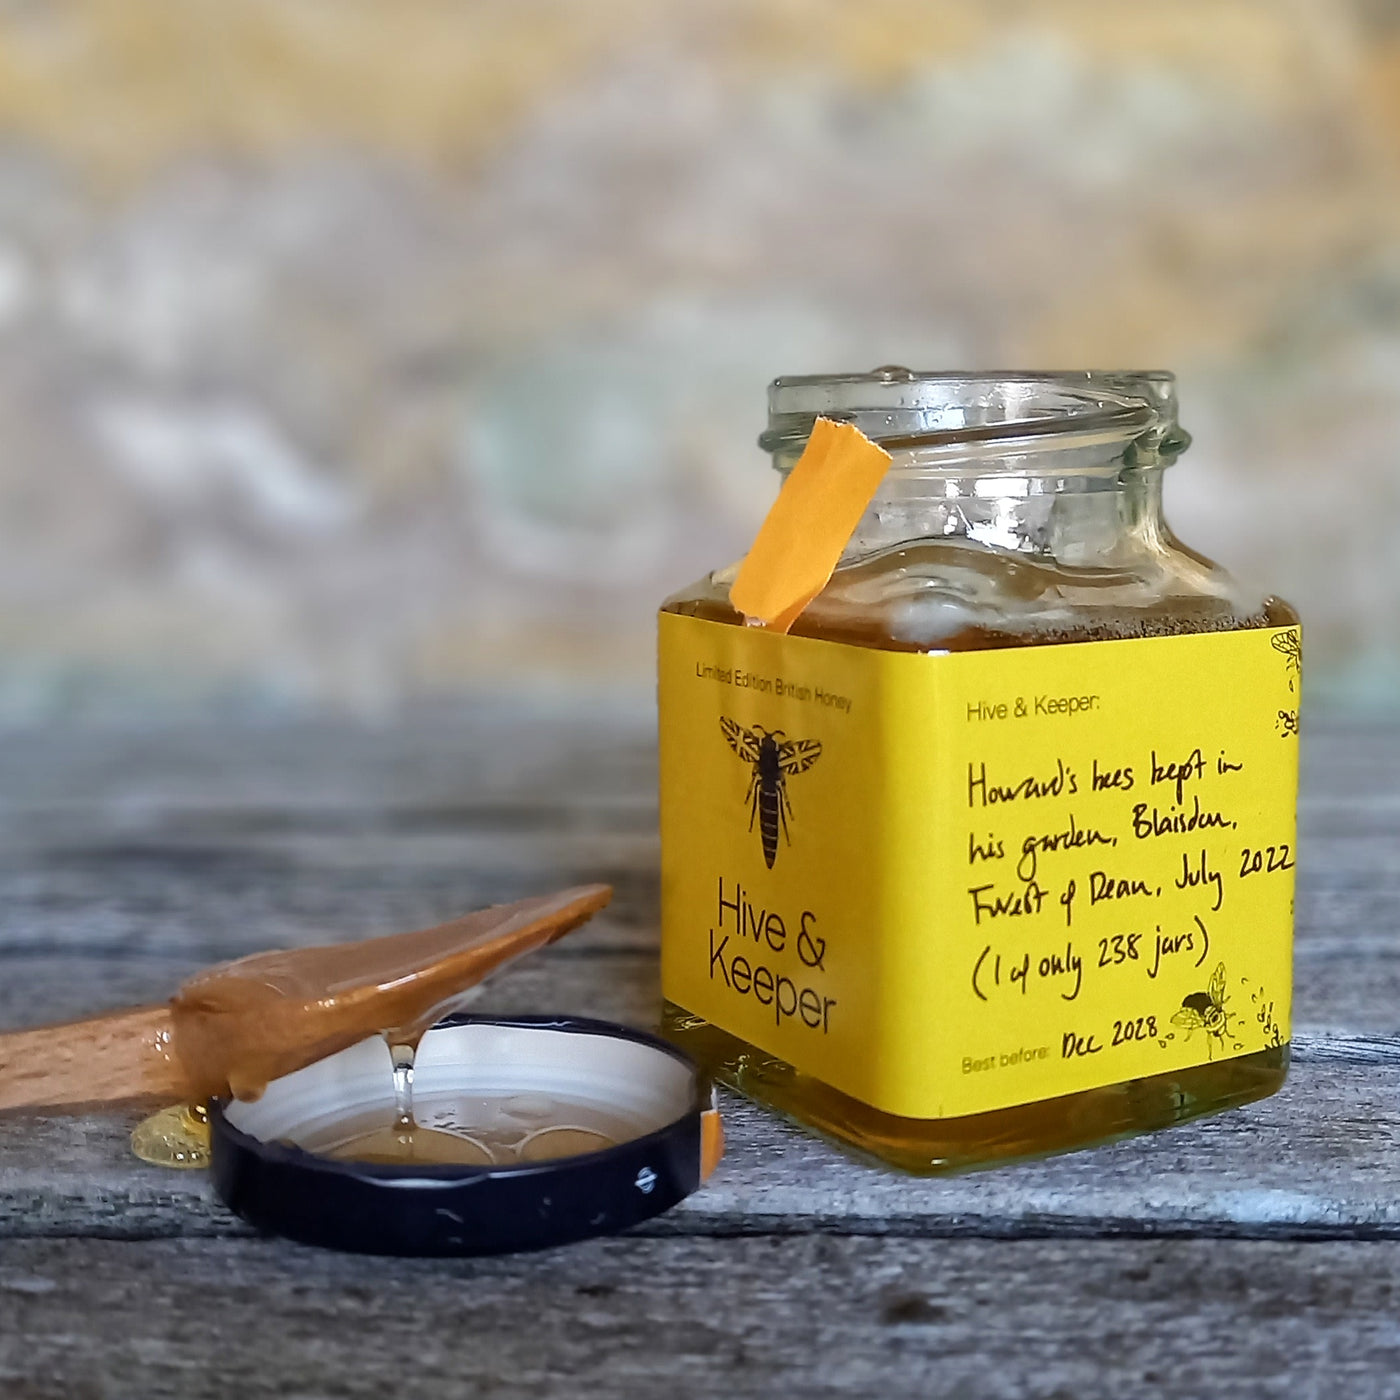 Honey from a garden, Blaisdon, Forest of Dean, Gloucestershire